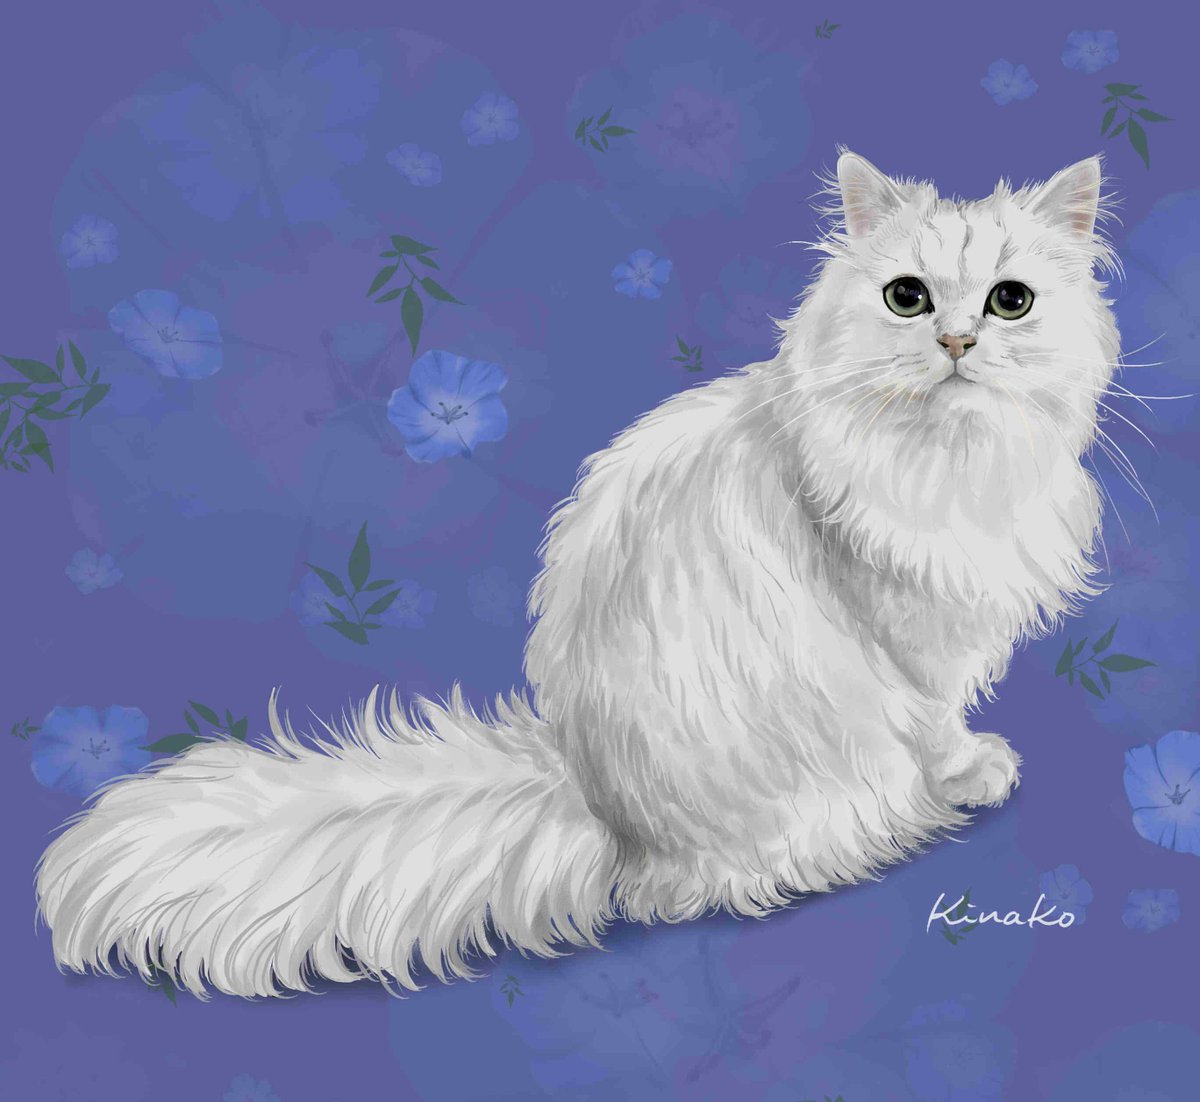 きなこ 猫の絵を描いています はじめまして チンチラシルバーの2歳の女の子です とうふちゃんです W イラストで描かせていただきました しっぽなどは 想像で描き足しました 猫絵 Cat Drawing 猫イラスト 猫画 チンチラシルバー